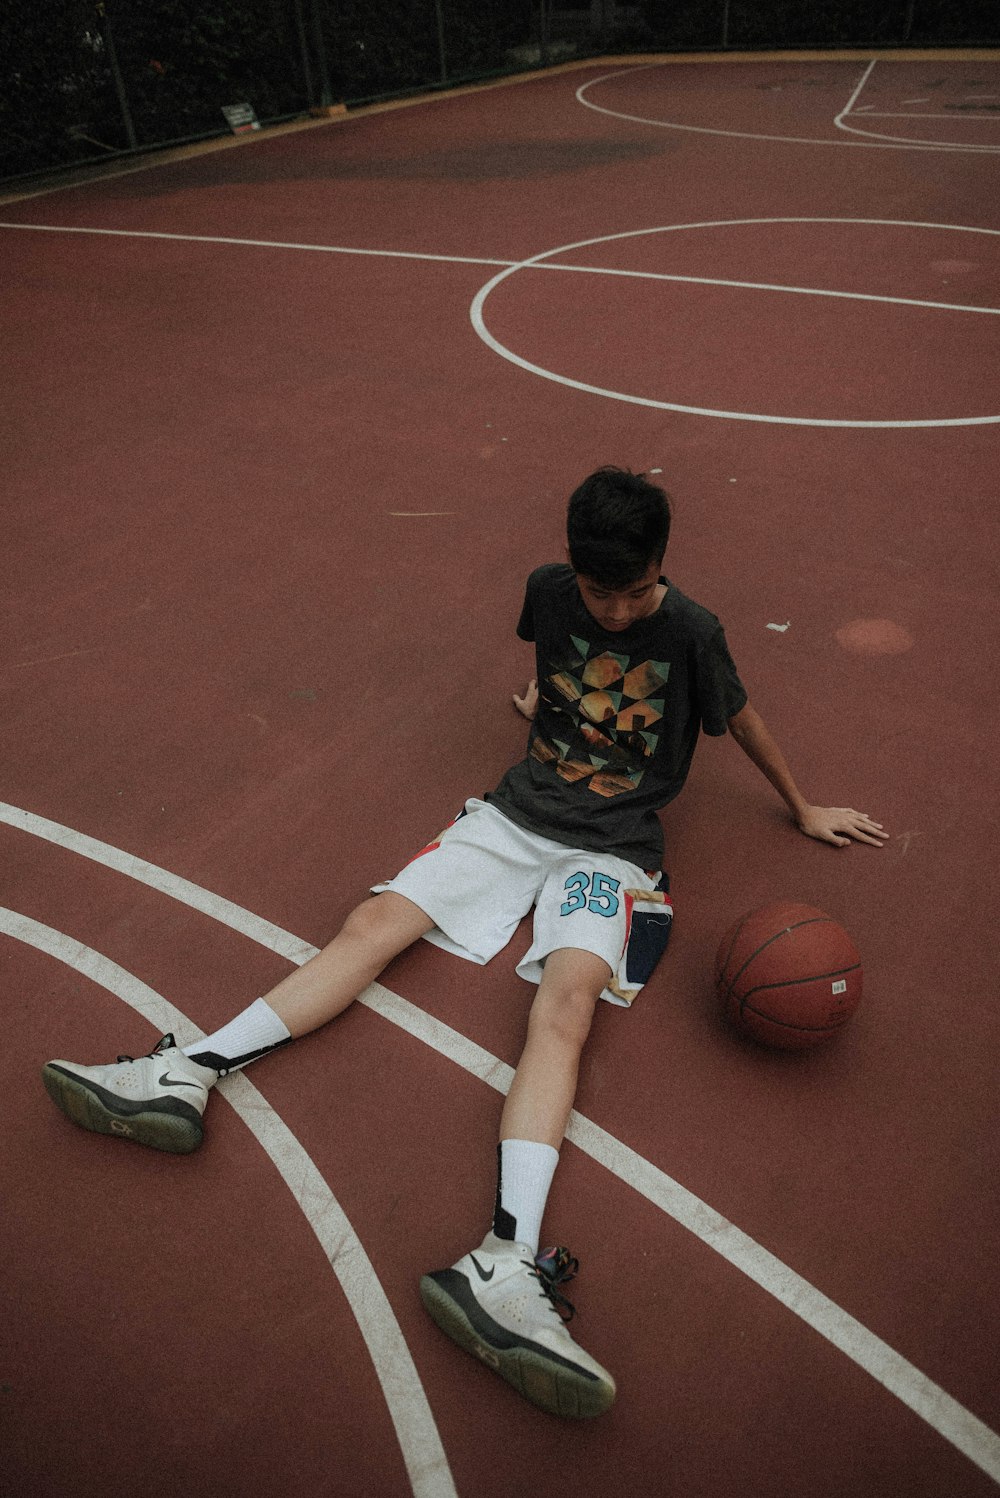 バスケットボールコートに横たわってバスケットボールを見ている男